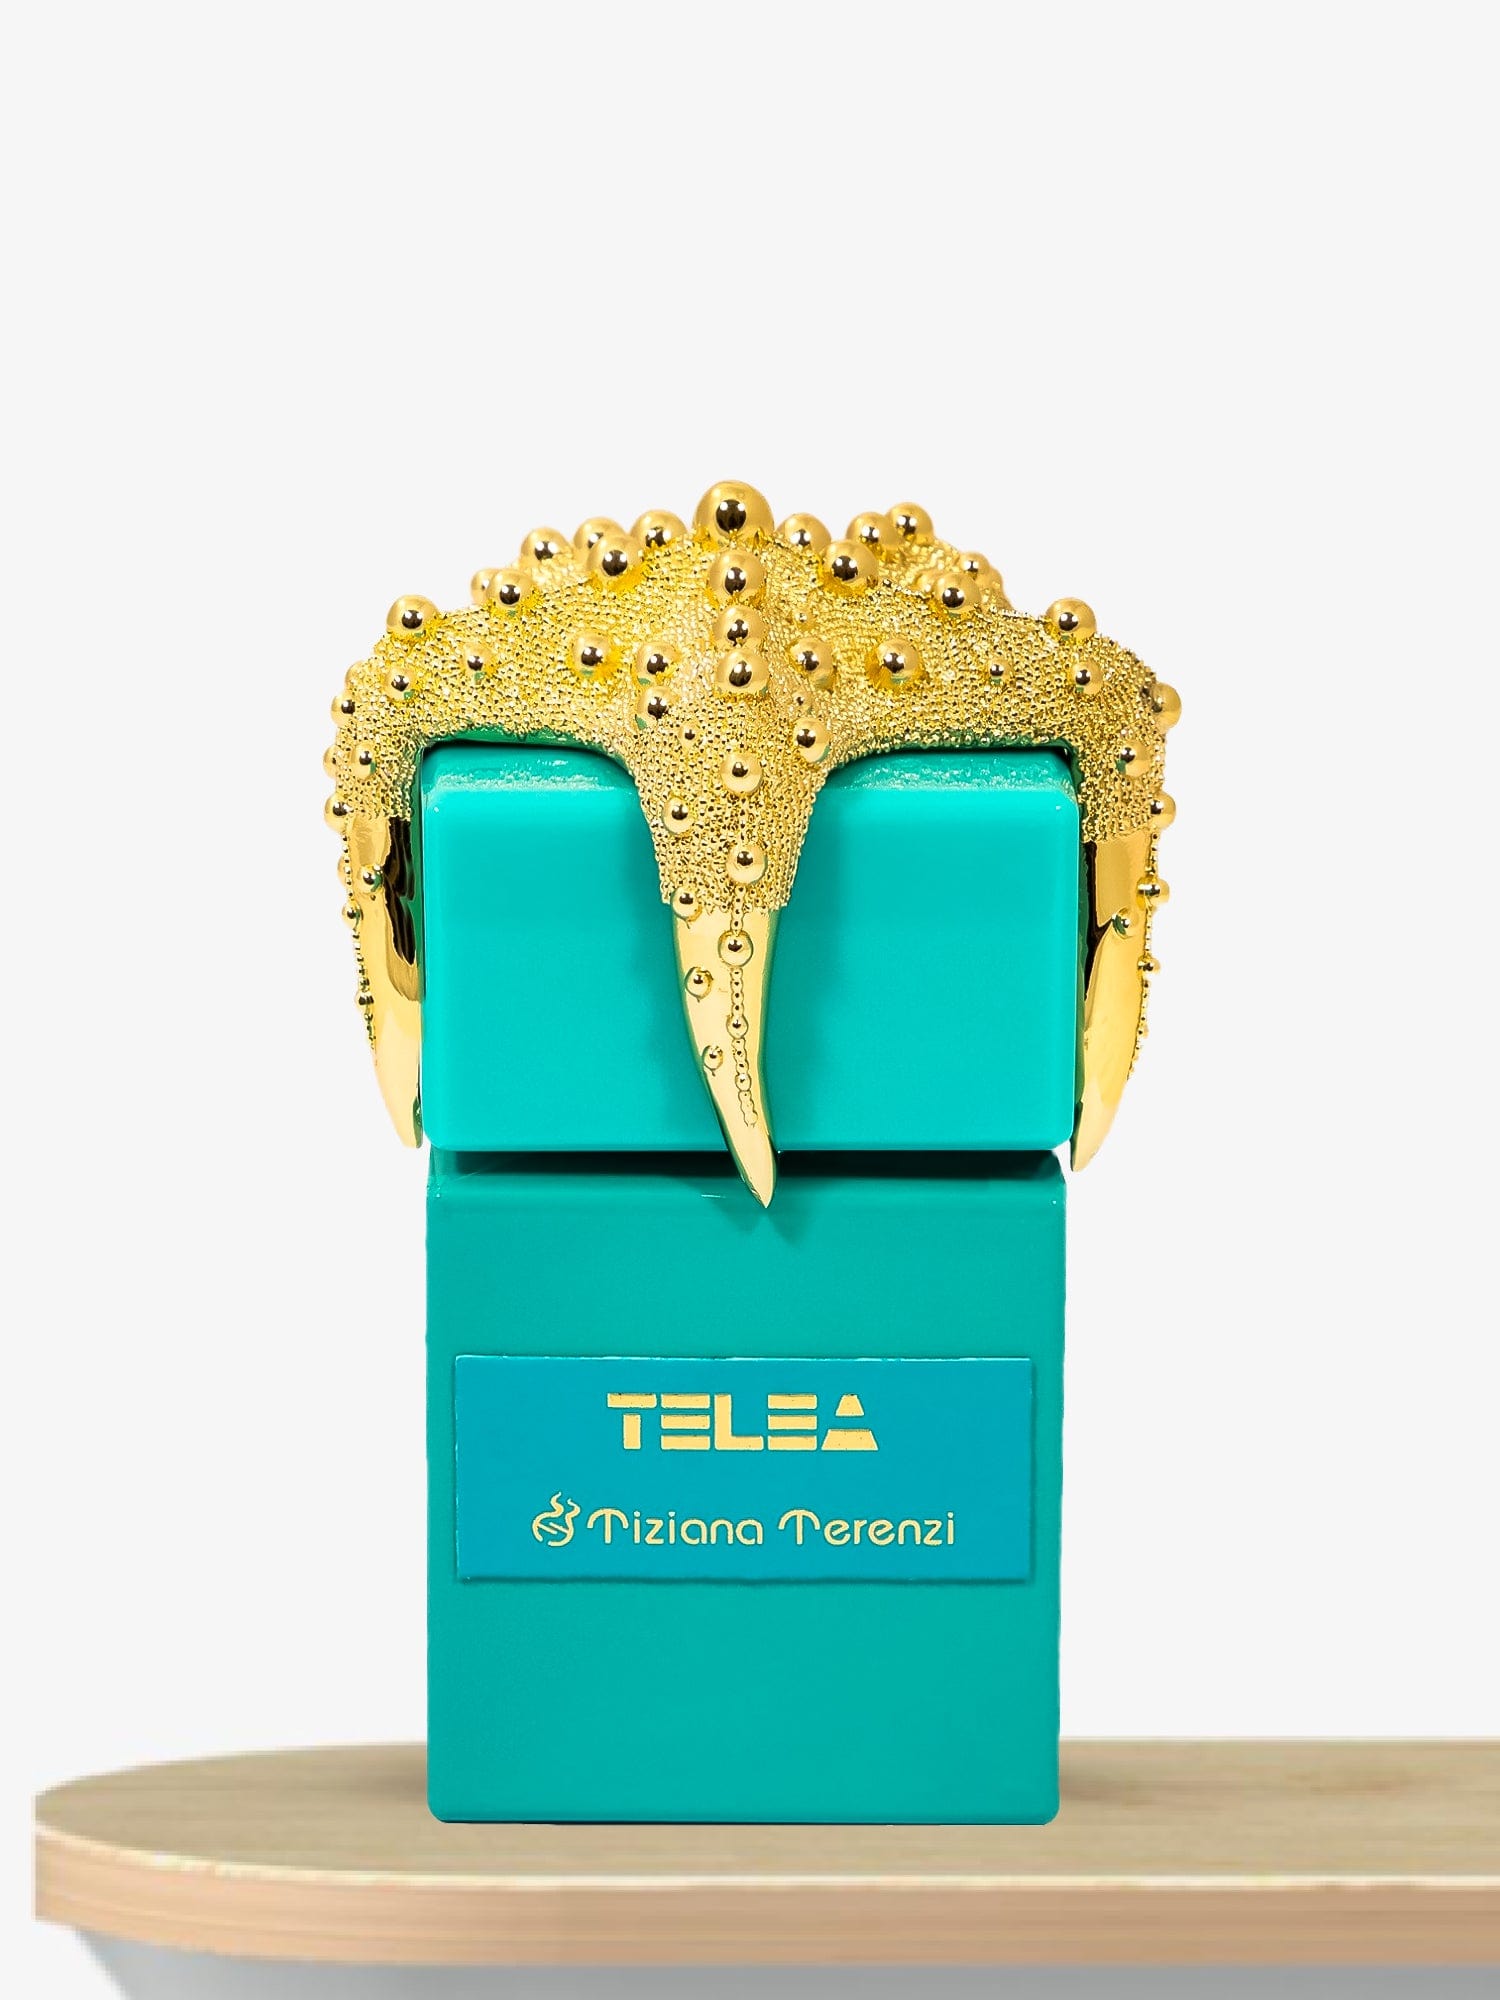 Tiziana Terenzi Telea Extrait de Parfum 100 mL / Unisex